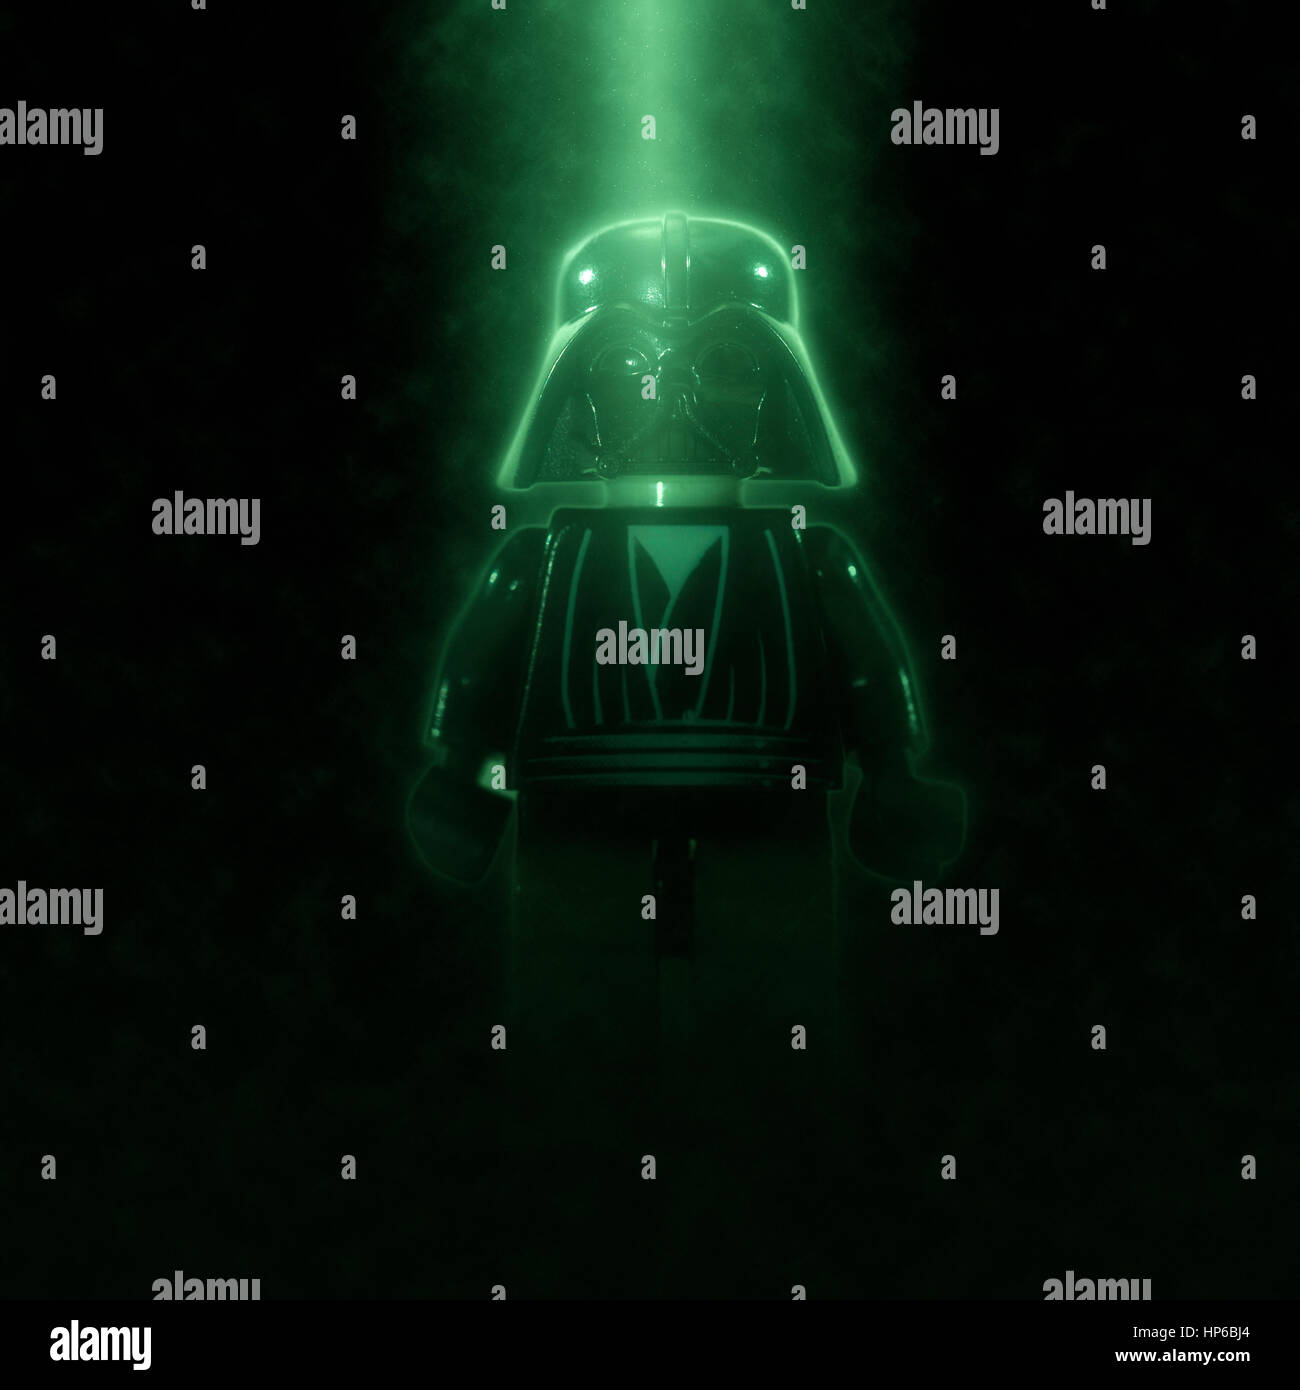 Digital verbesserte Bild von Darth Vader Star Wars Actionfigur Stockfoto